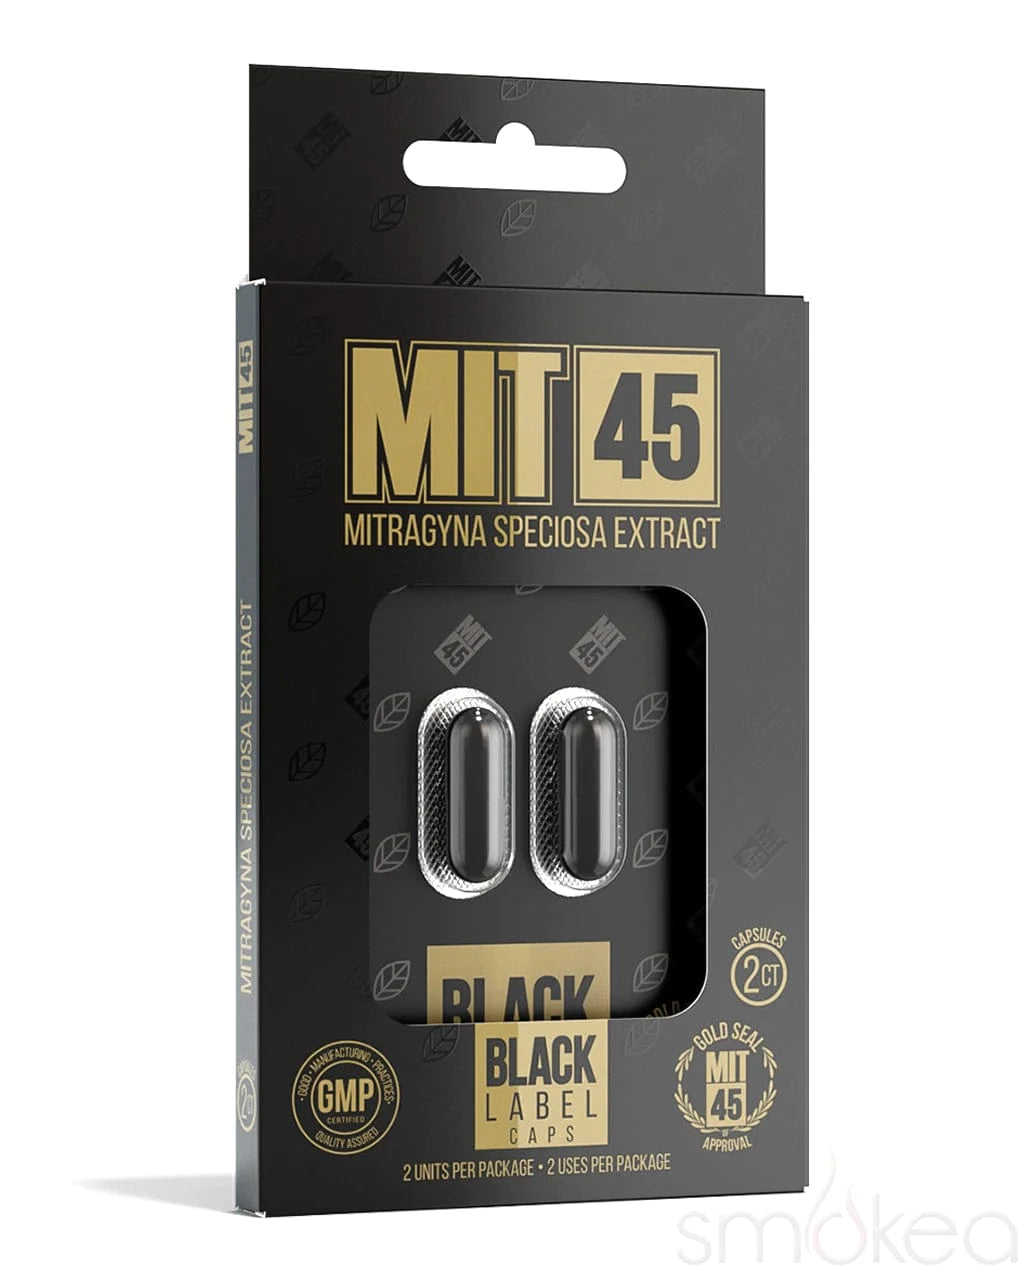 MIT 45 Black Label Gold Seal Capsules